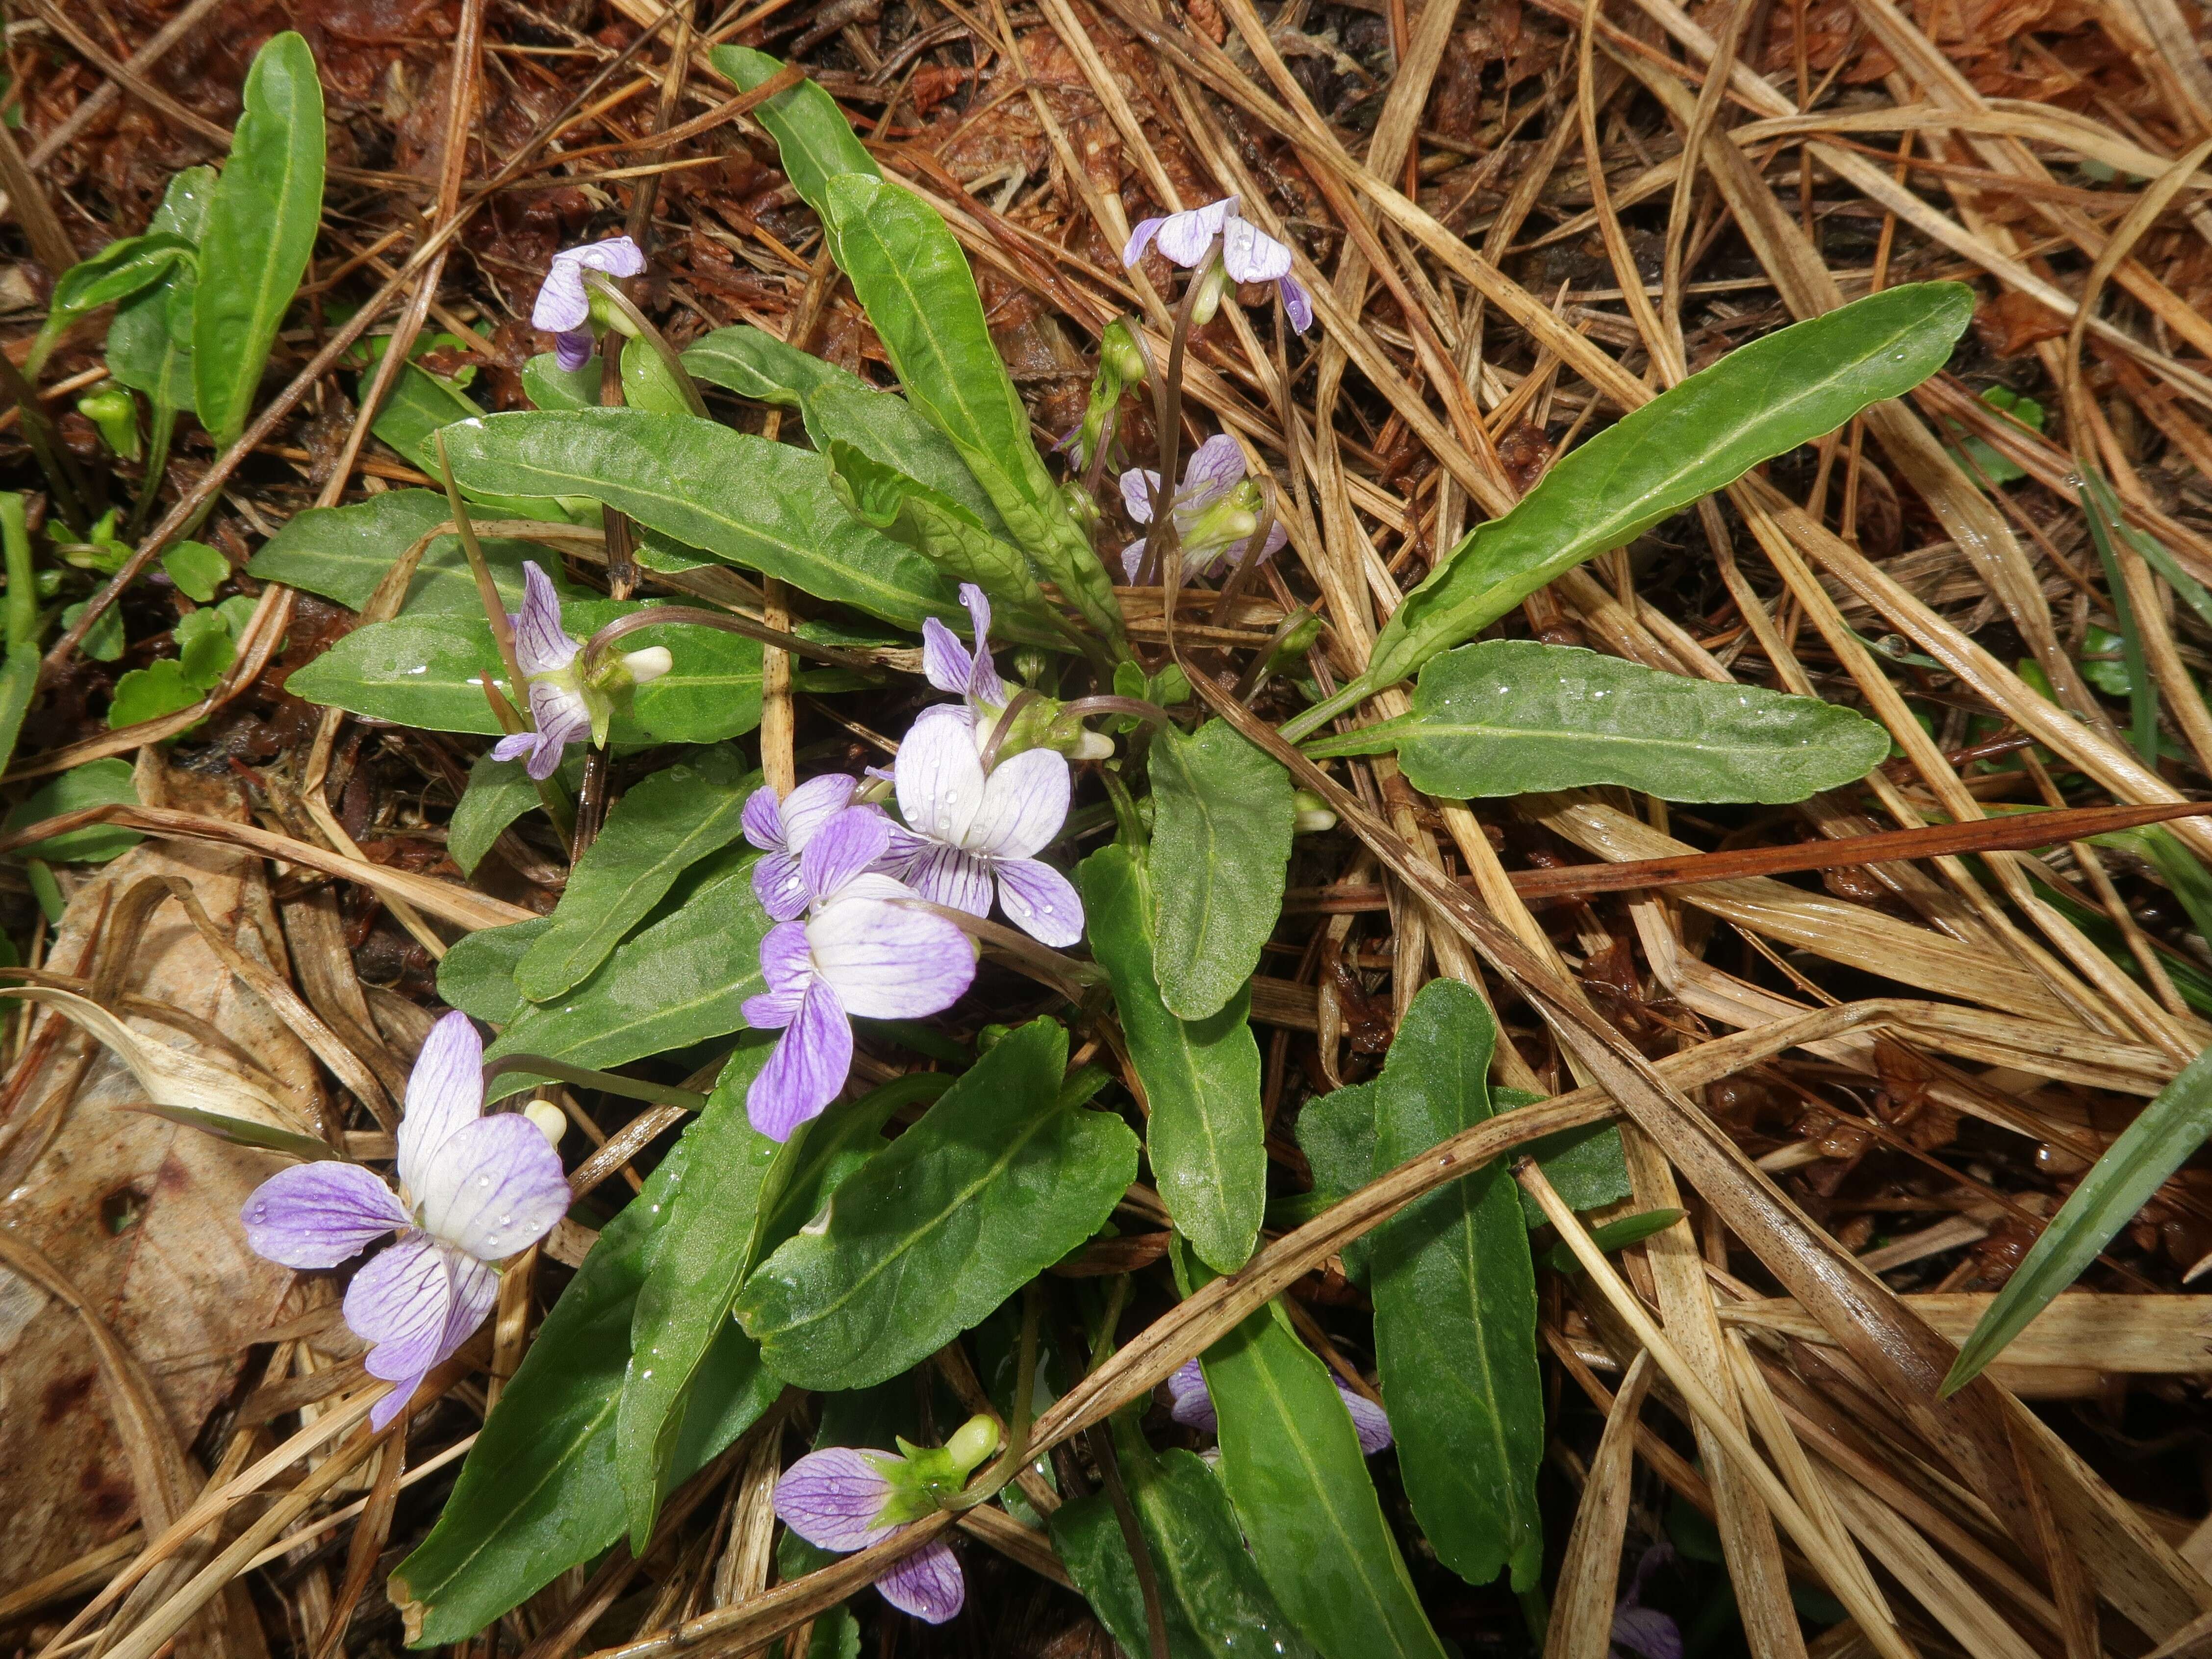 Image de Viola betonicifolia Smith